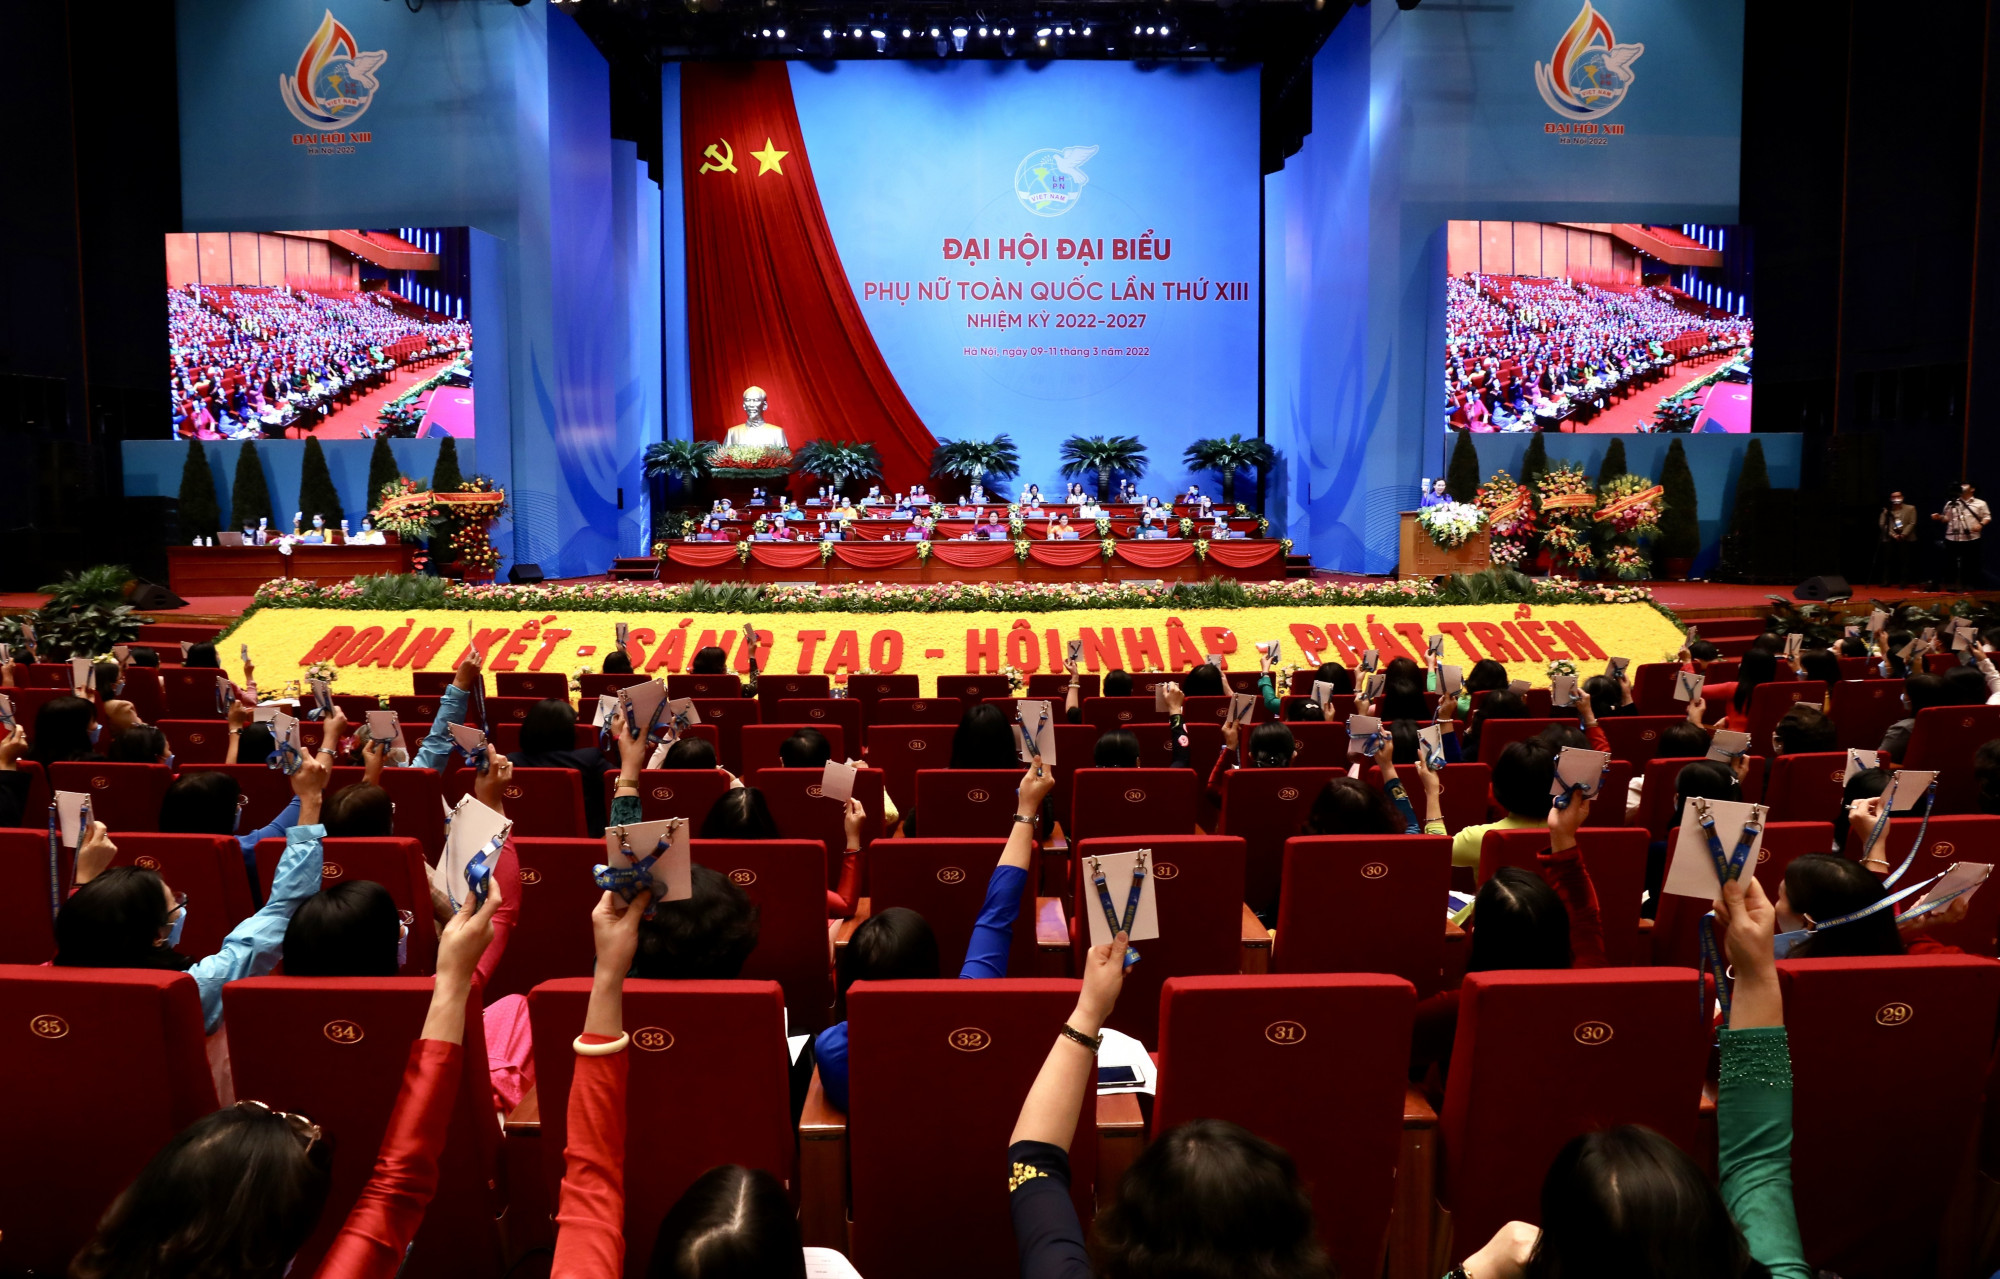 Đại hội Đại biểu Phụ nữ toàn quốc lần thứ XIII đã bầu Ban chấp hành Trung ương Hội LHPN Việt Nam nhiệm kỳ 2022 - 2027